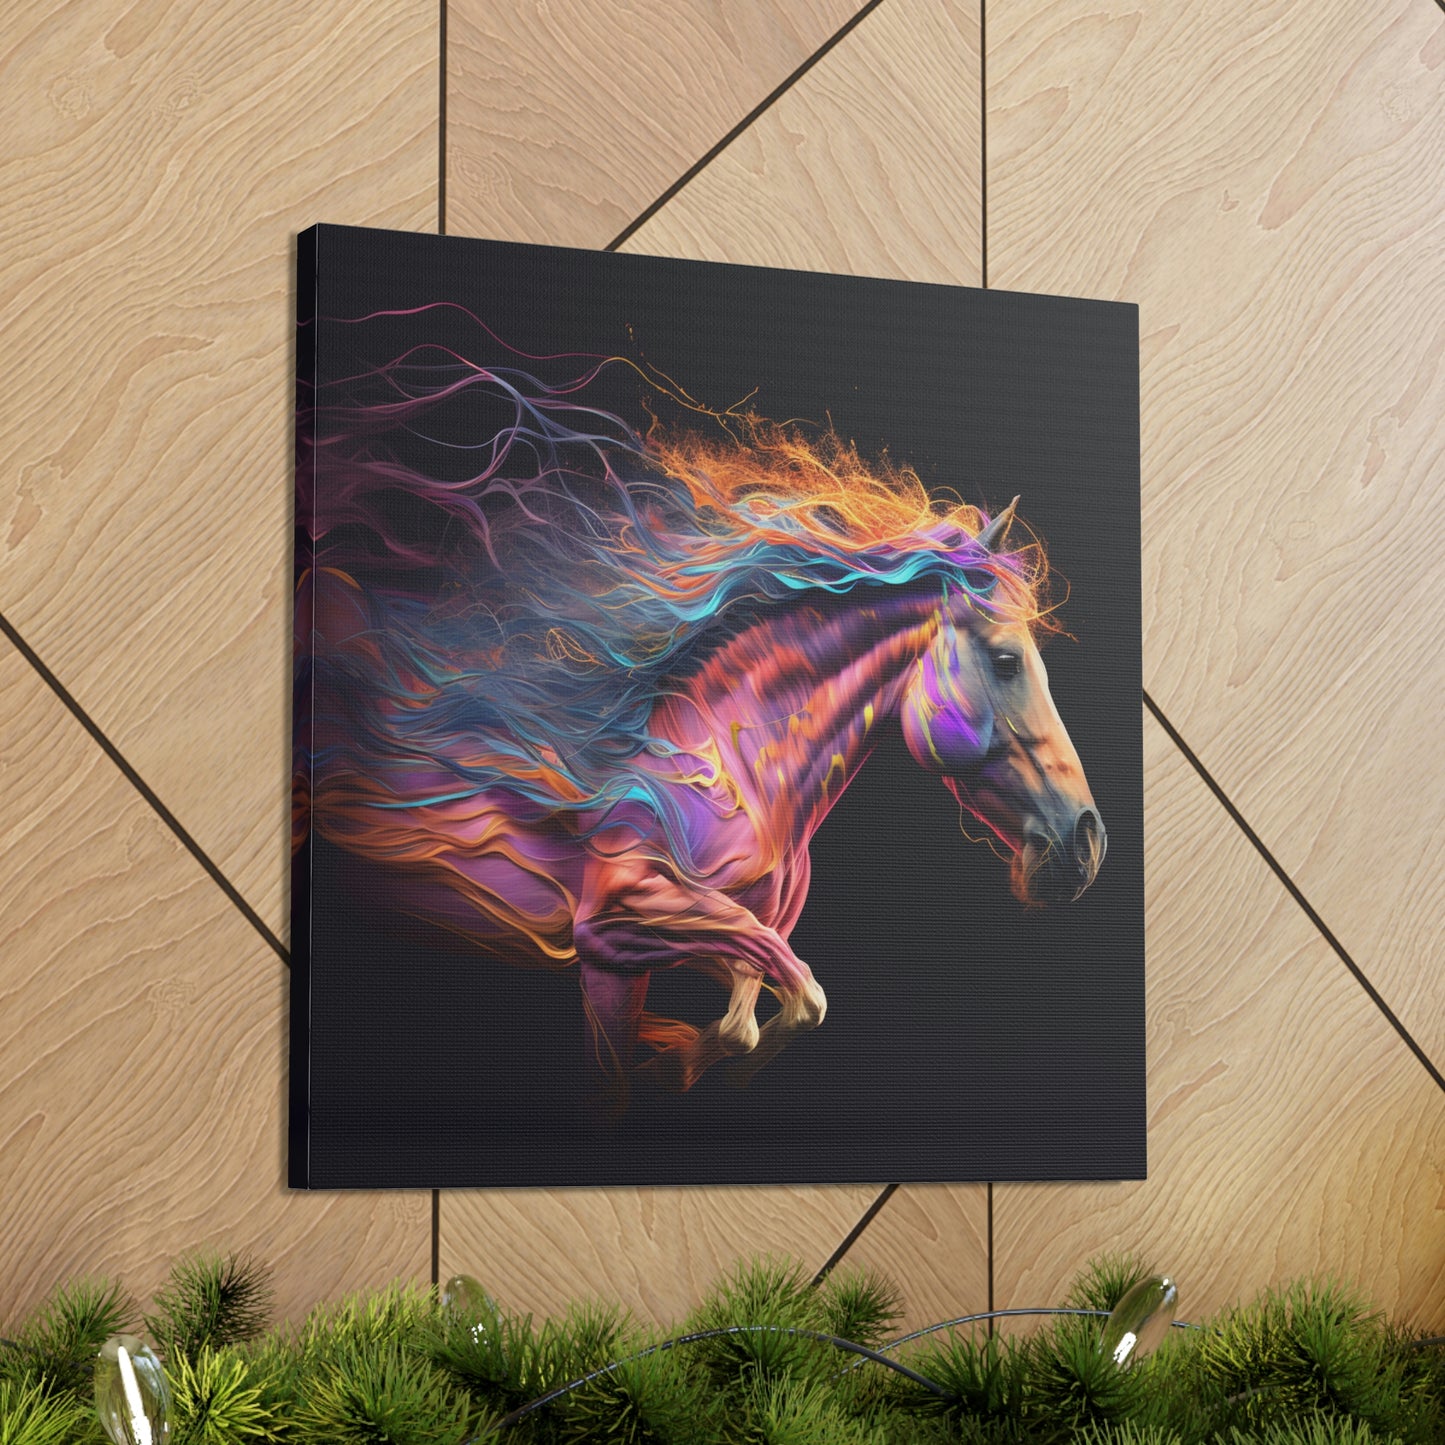 Canvas Gallery Wraps Florescent Horses Mane 2